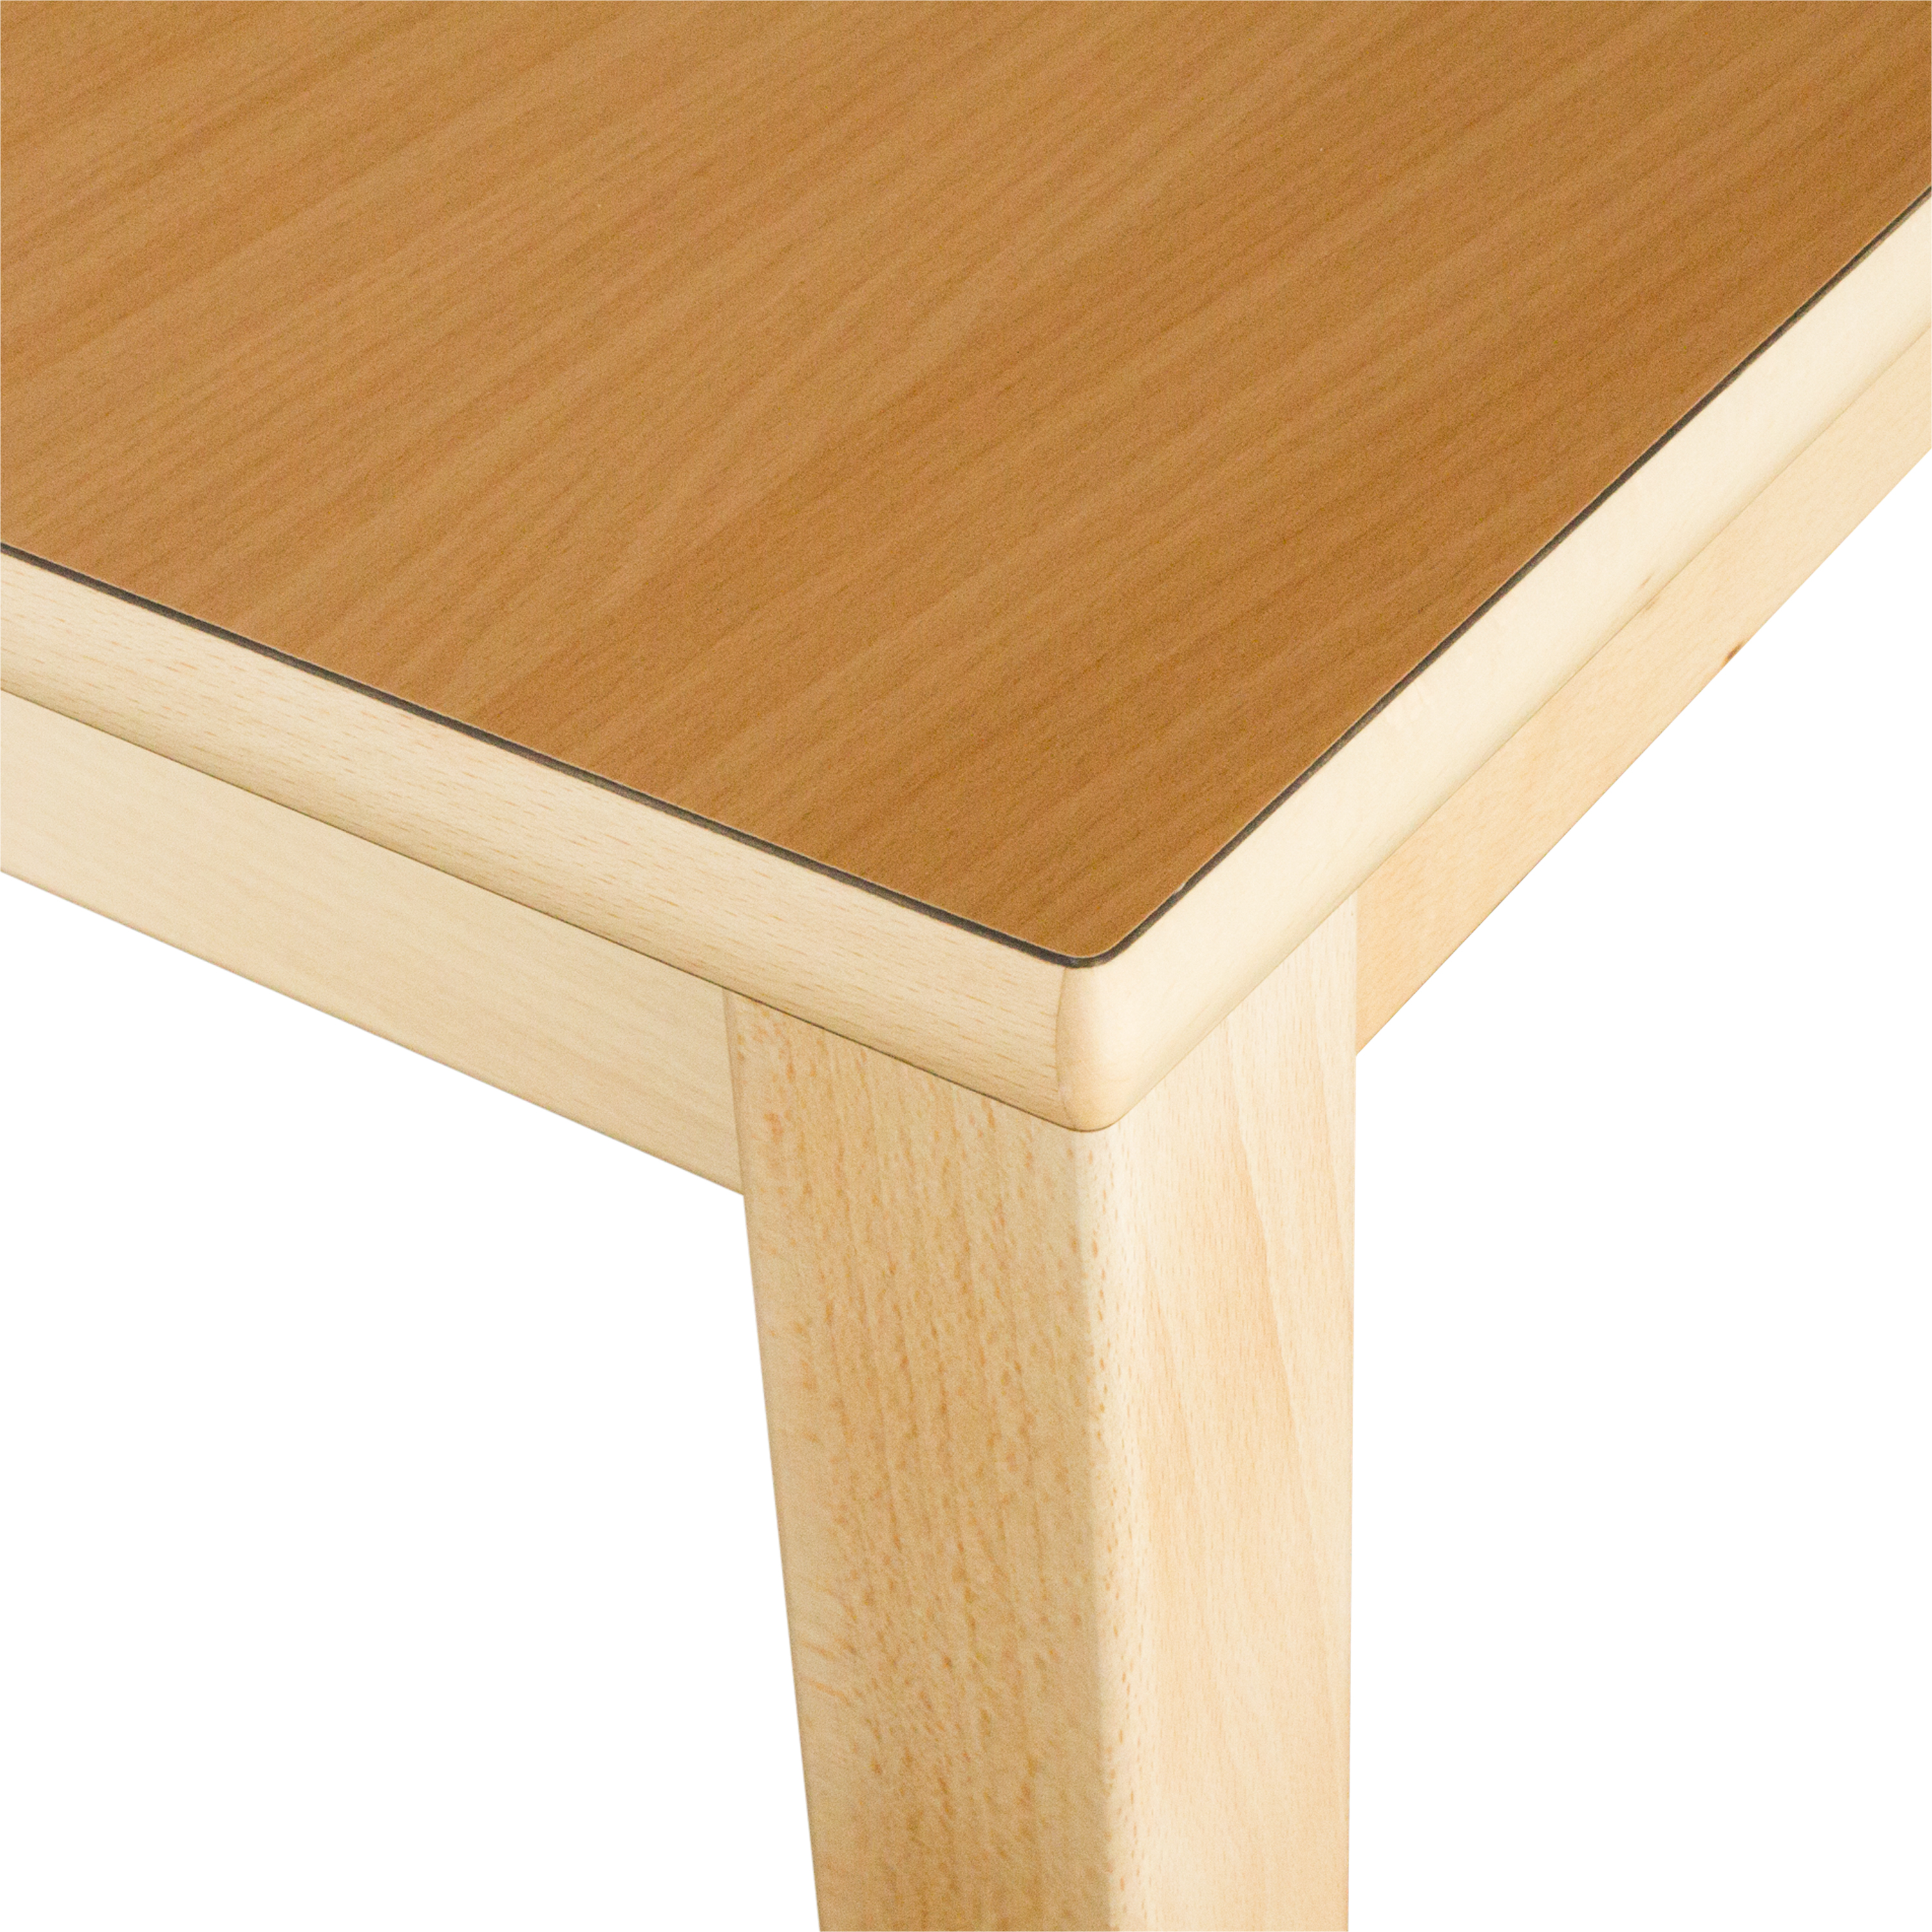 Runder Tisch, Durchmesser 100 cm, Tischhöhe 40 cm